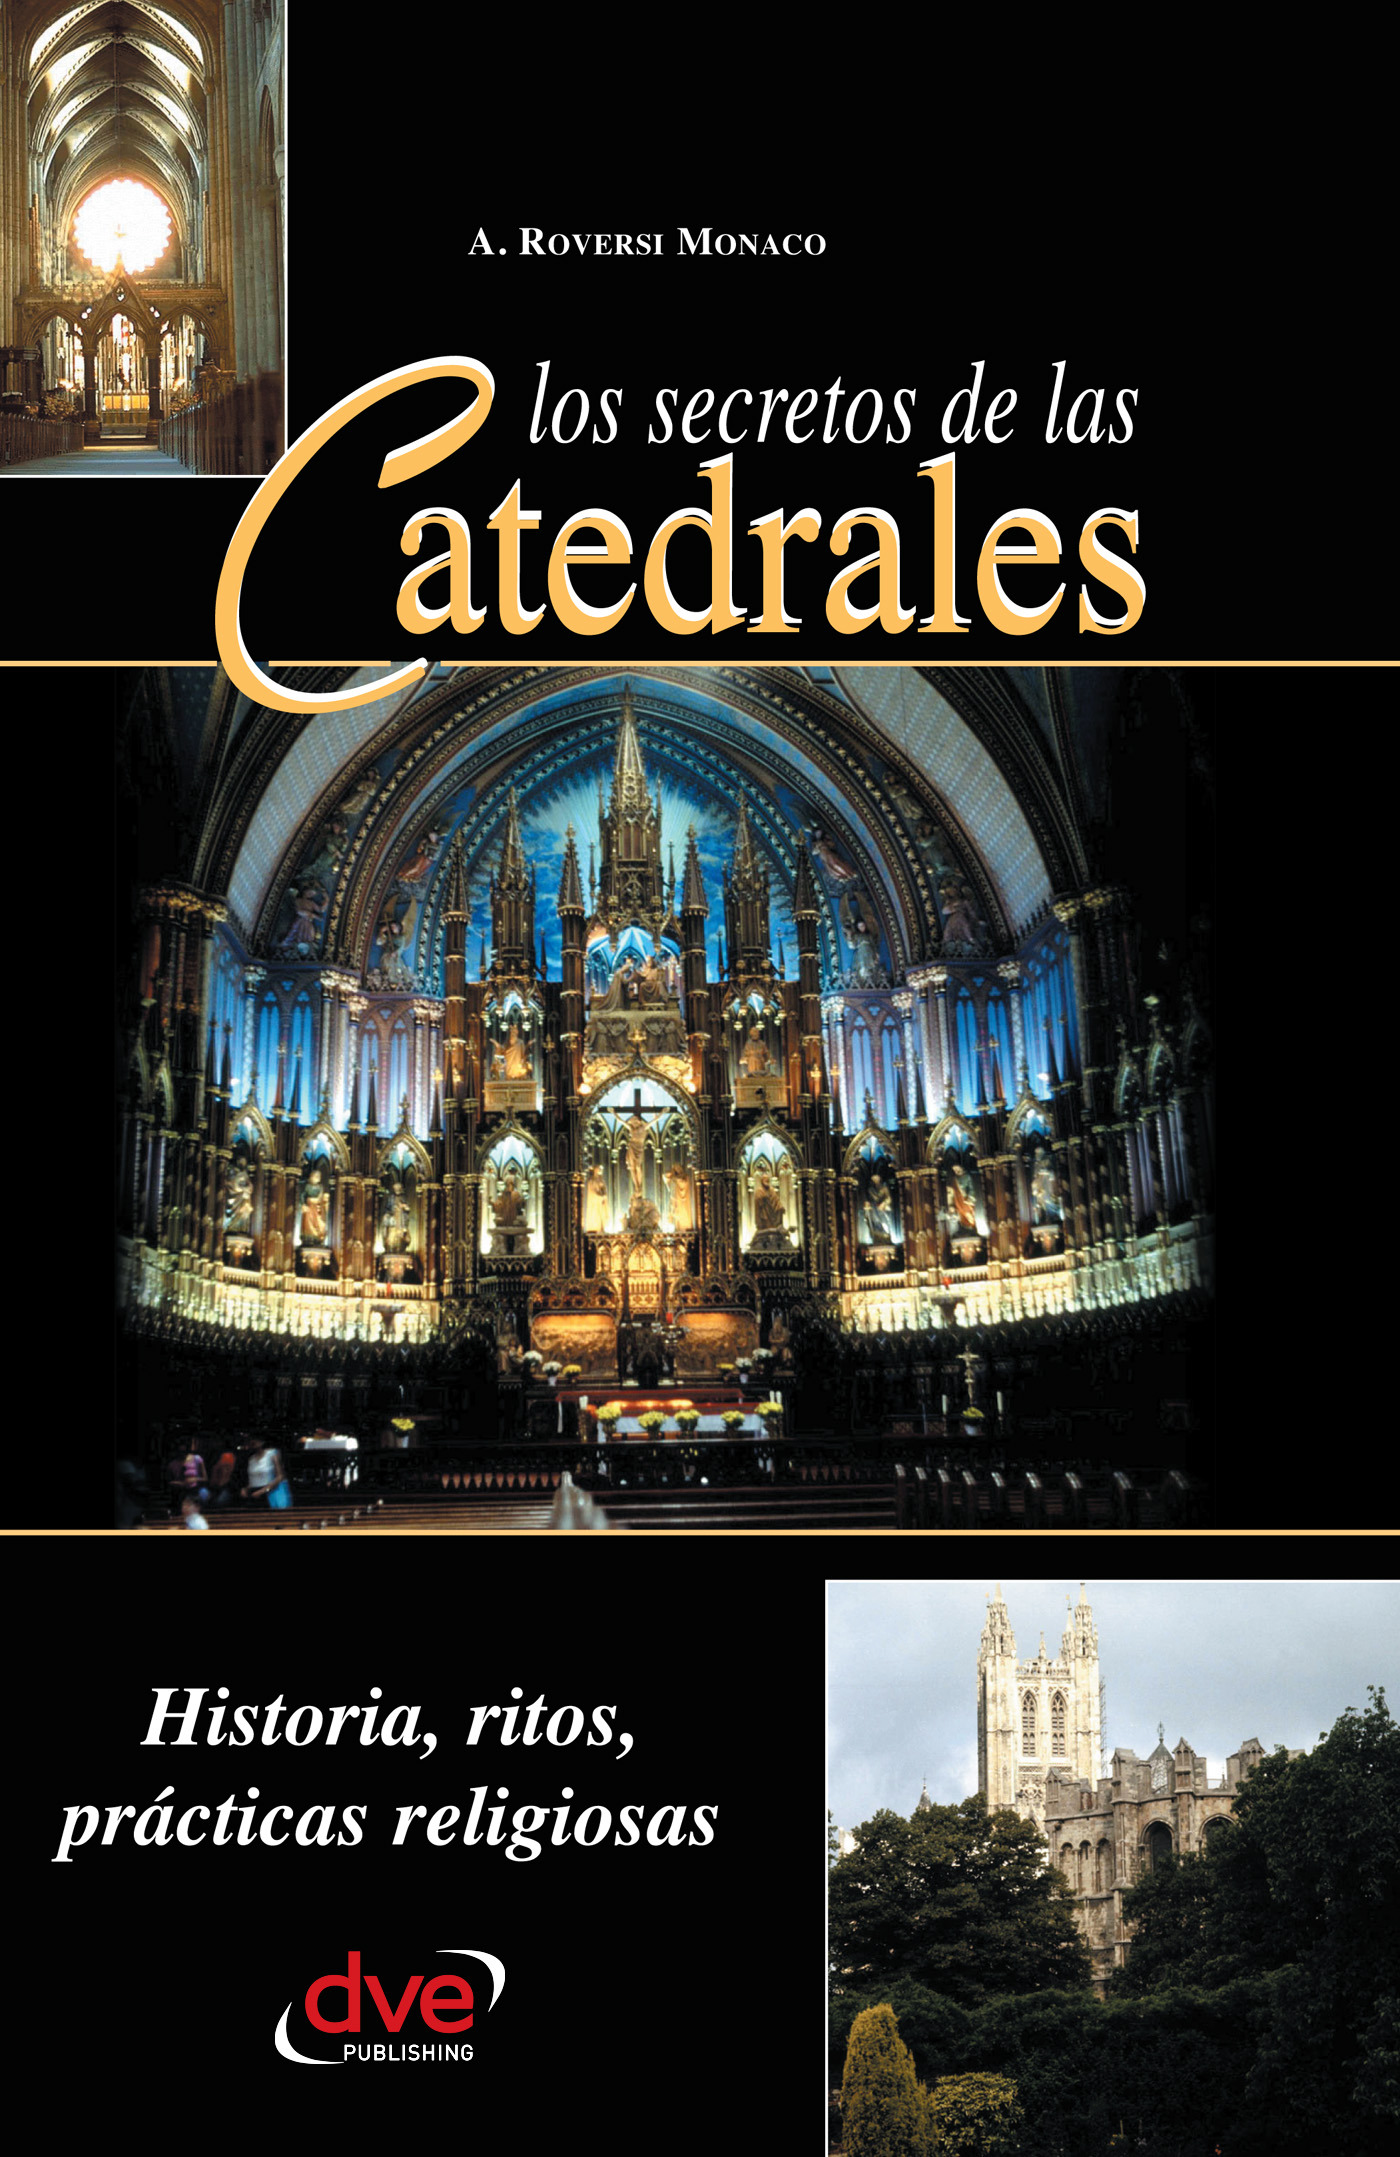 Monaco, A. Roversi - Los secretos de las catedrales. Historia, ritos, prácticas religiosas, ebook